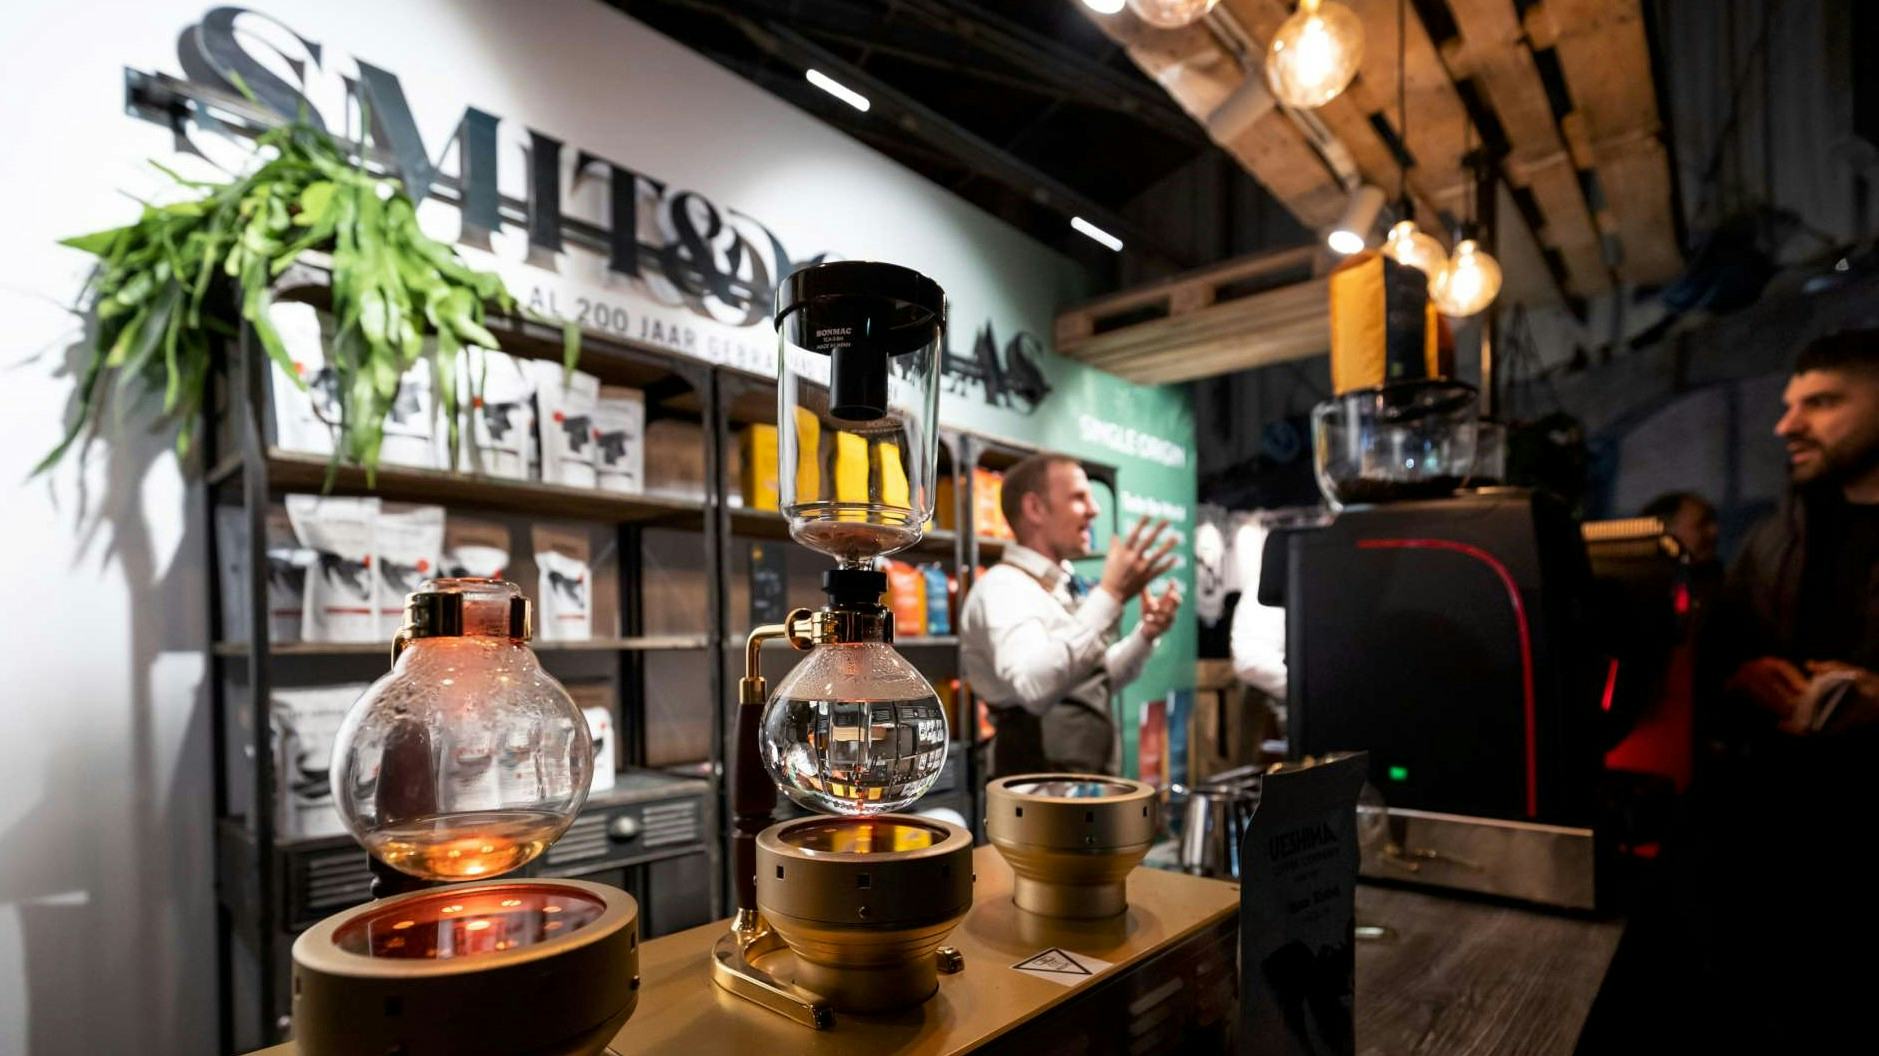 Smit&Dorlas' Q-grader Aart Eskes presenteert de nieuwe merken op Amsterdam Coffee Festival. Foto: Sebastiaan Rozendaal